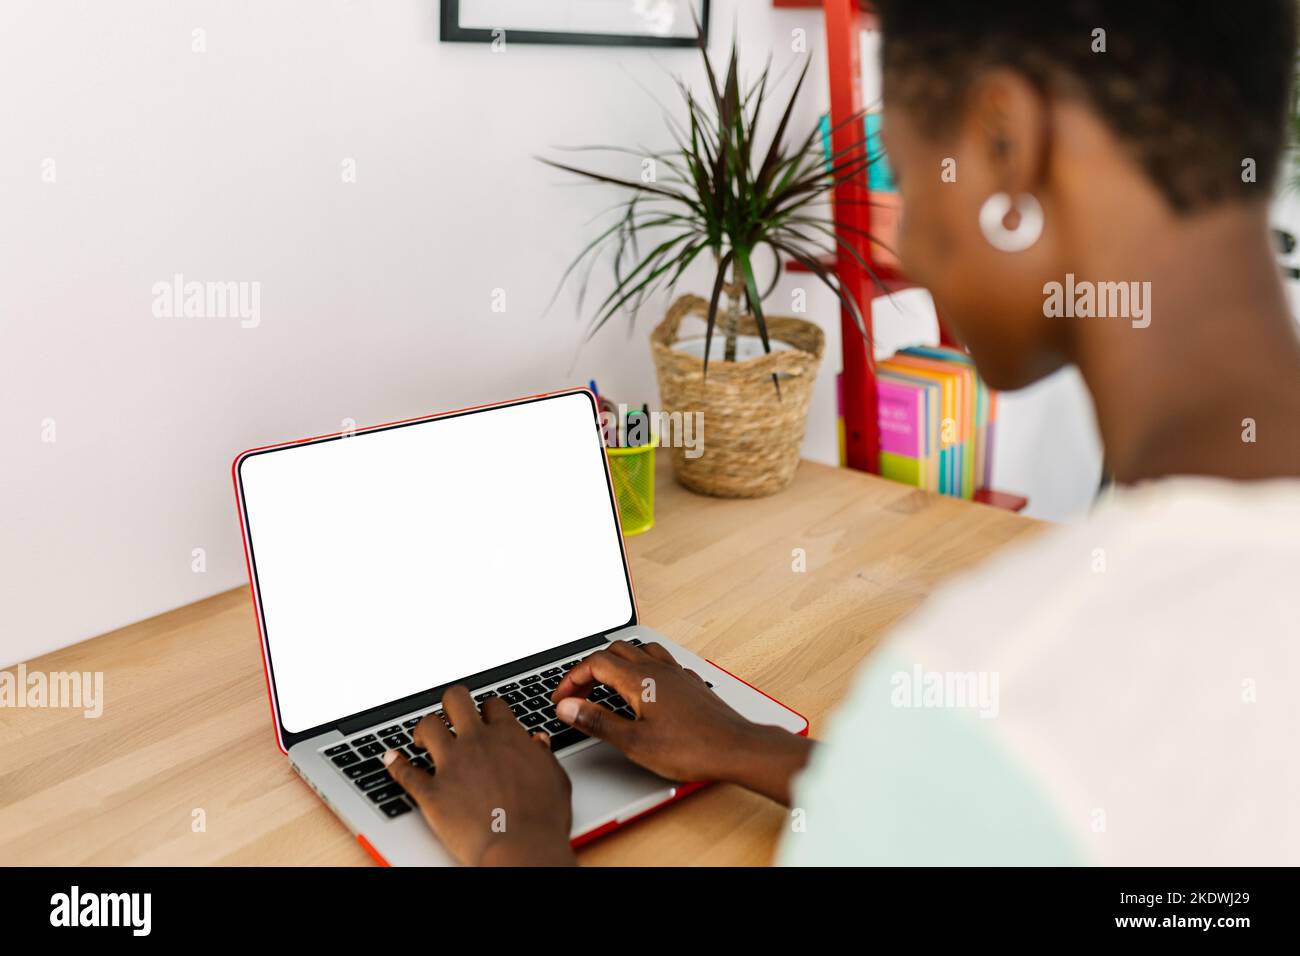 Immagine beffa di una giovane donna africana che utilizza un computer portatile con schermo vuoto Foto Stock